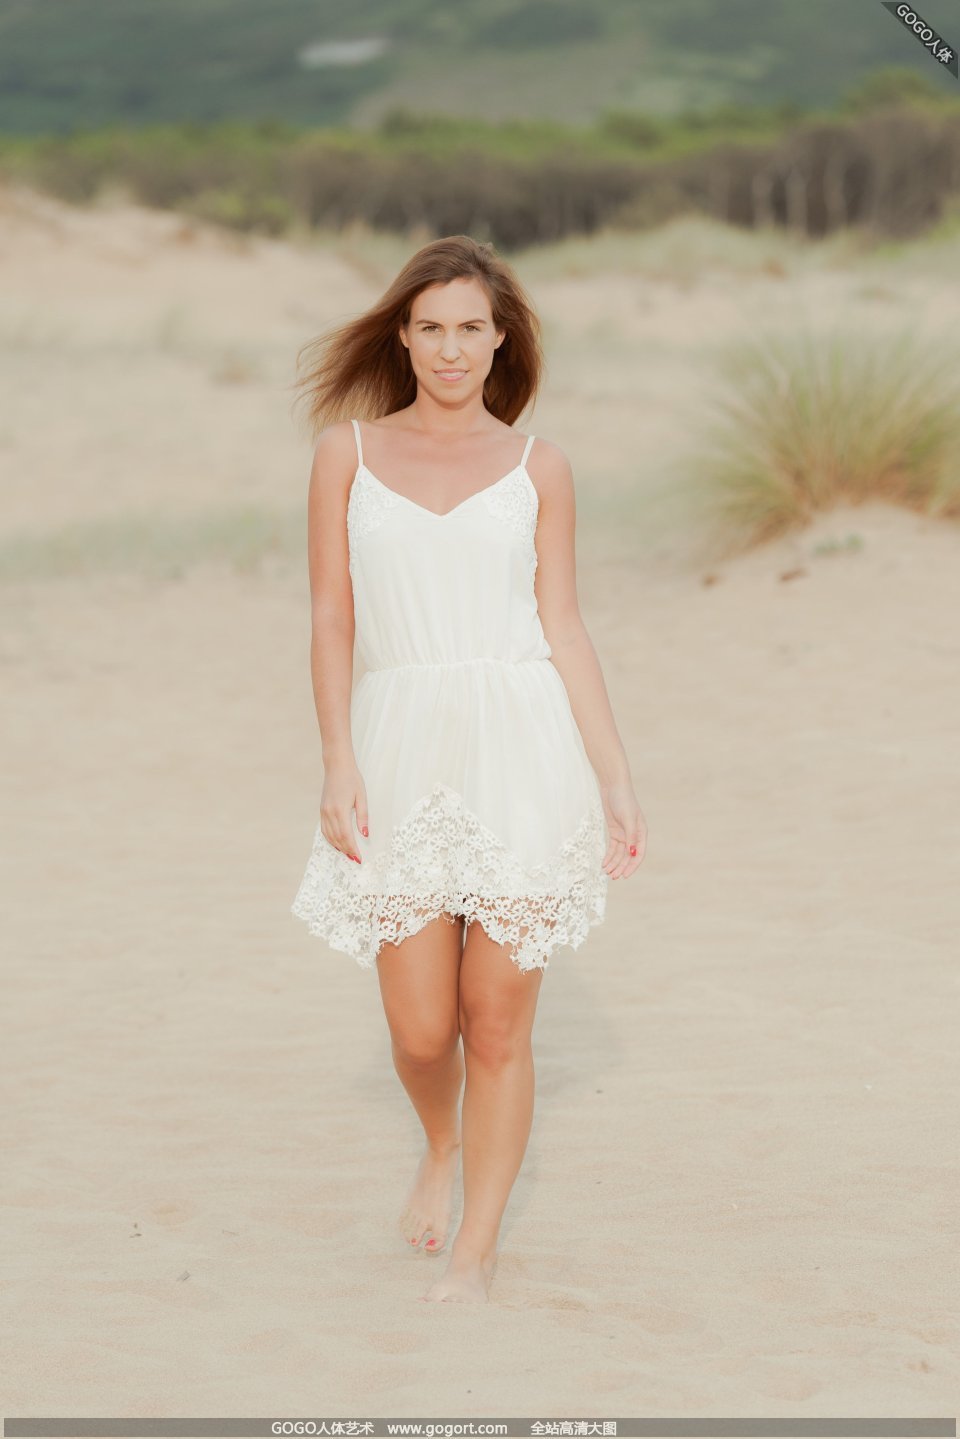 모델 JENNYA는 모래 바닥에서 그녀의 음부를 엿먹였습니다.